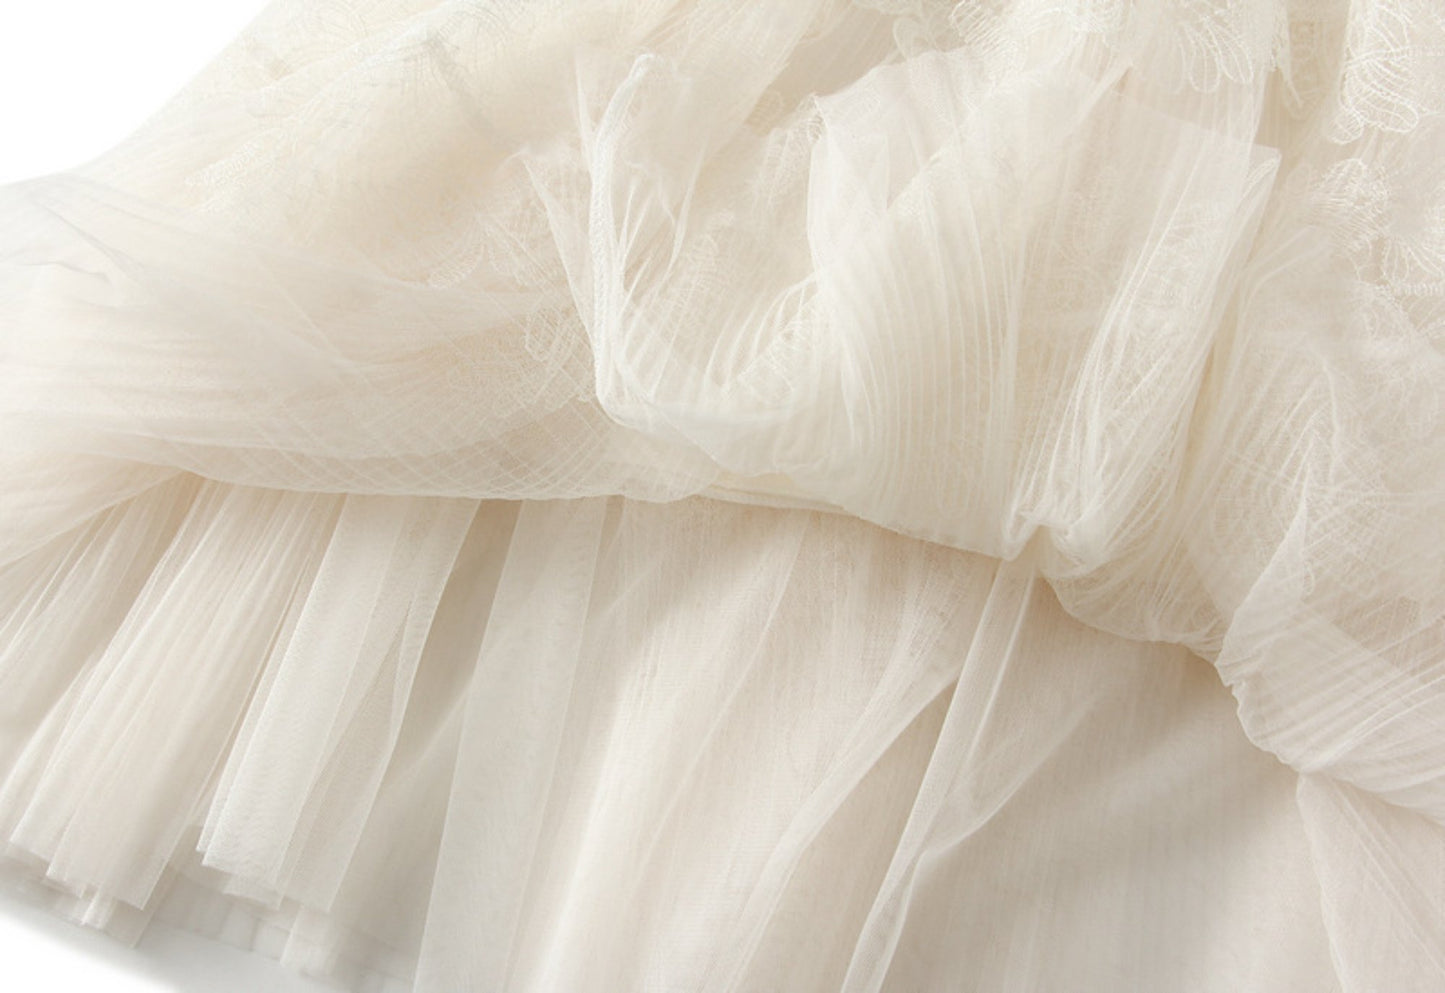 Lace Pleated Mesh Midi Skirt